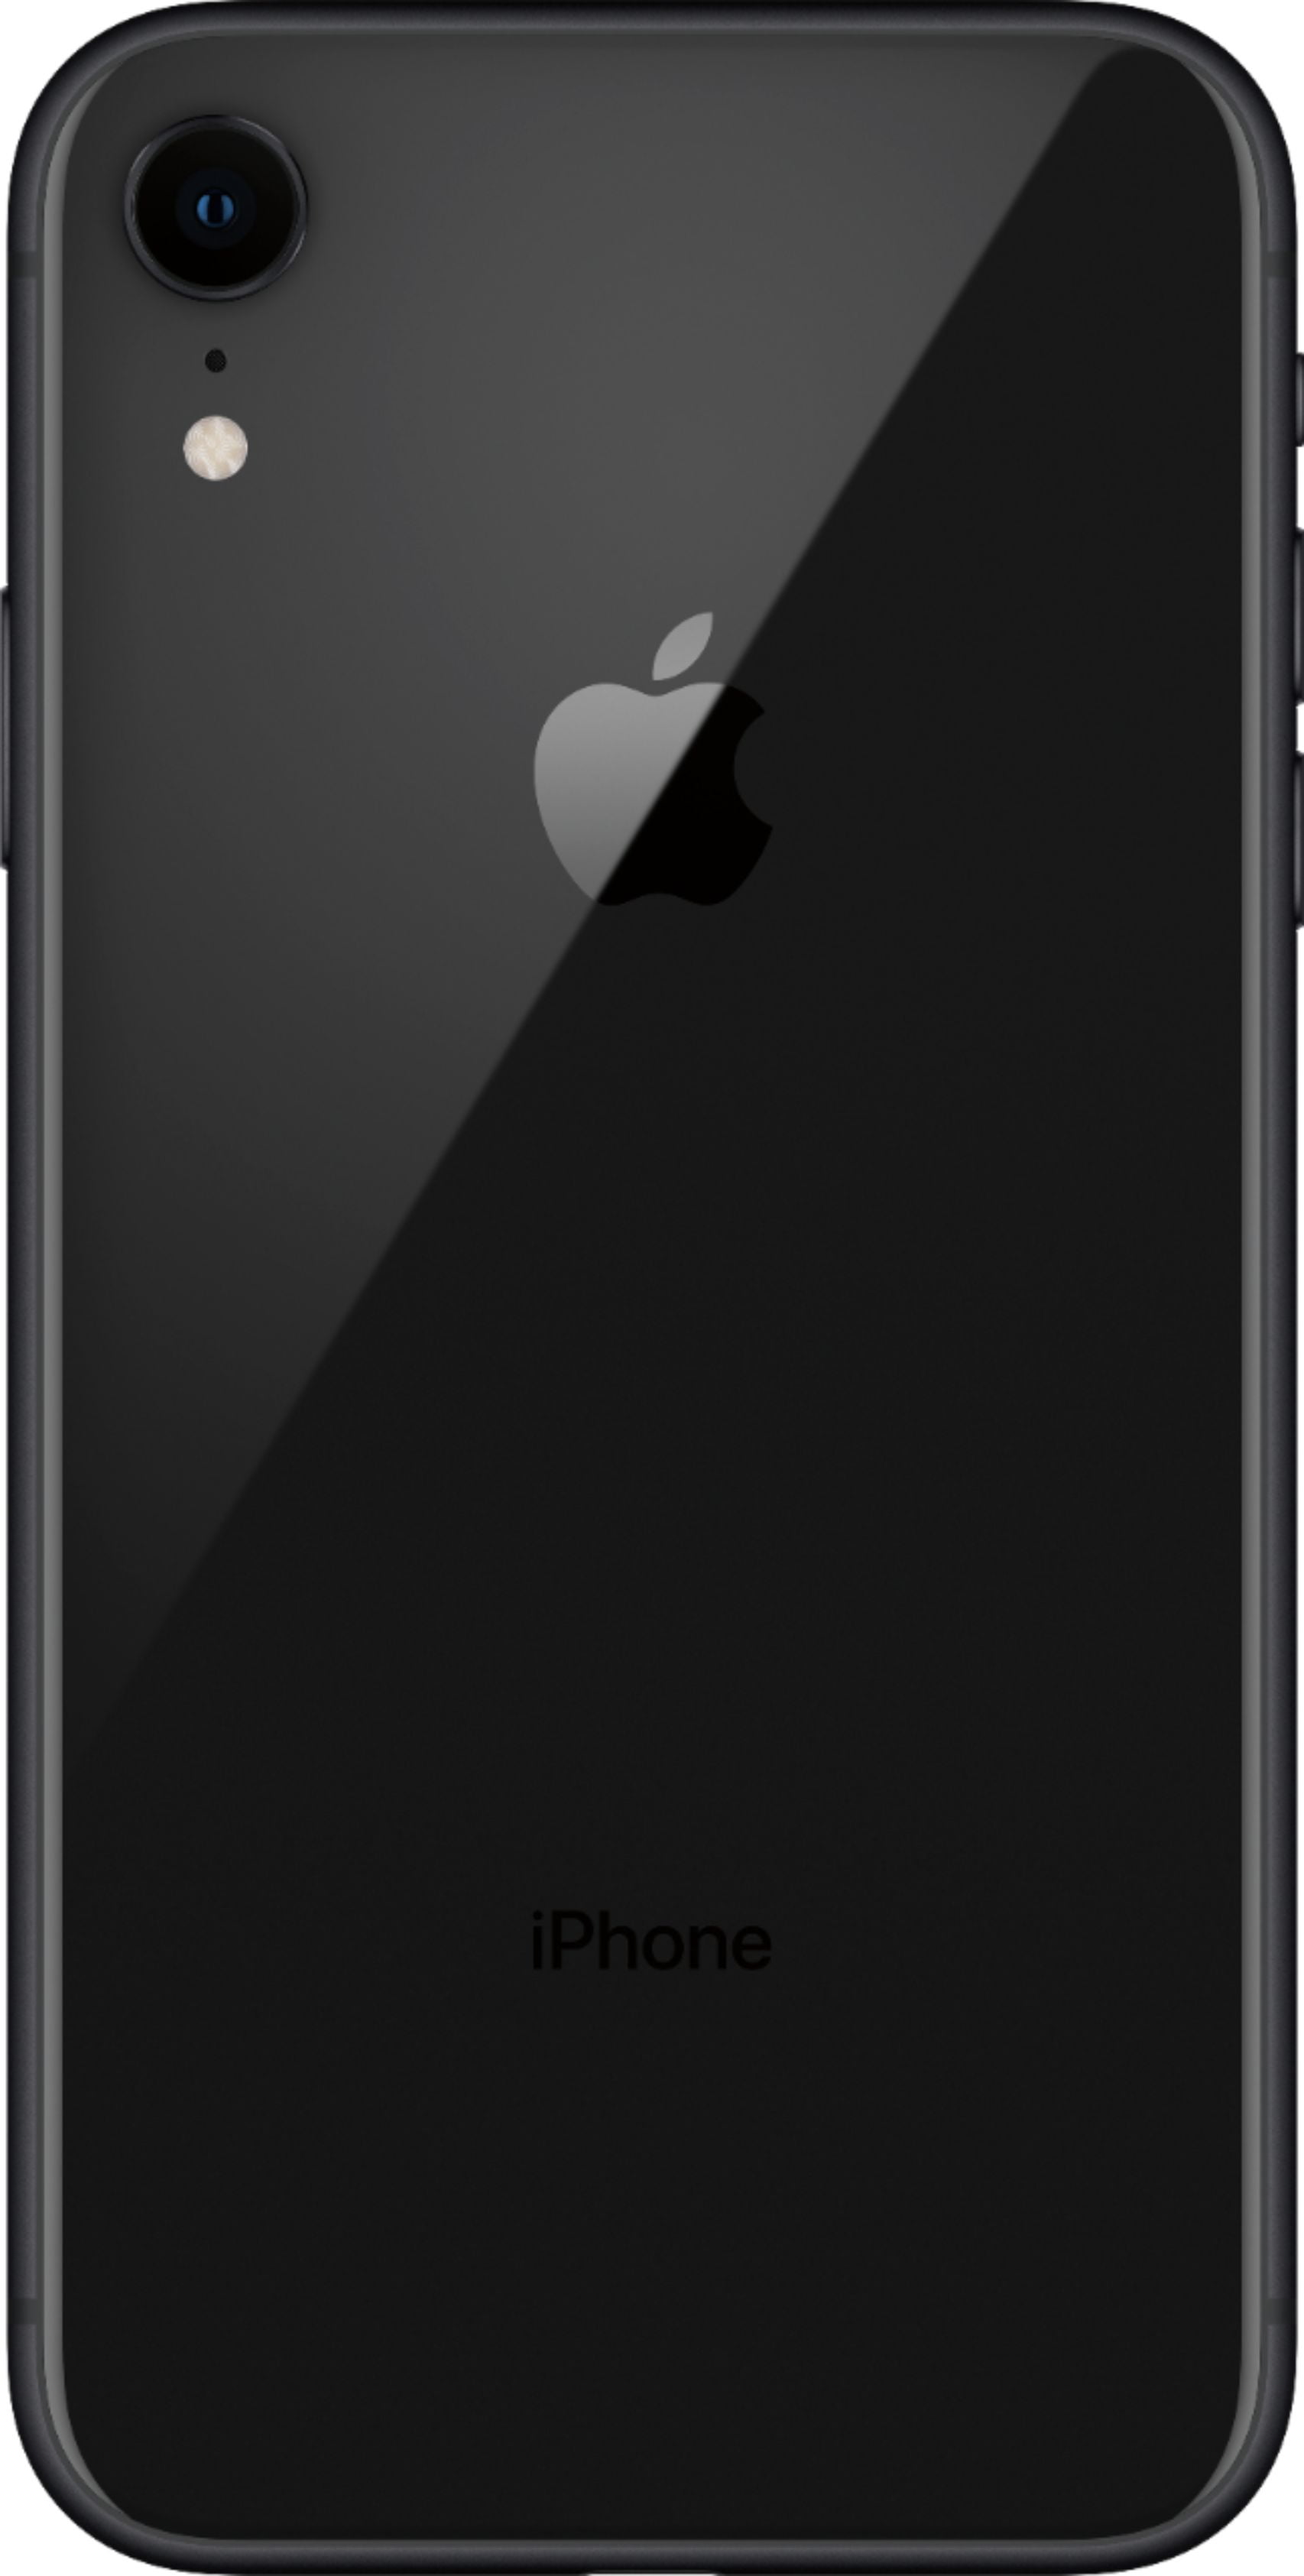 Apple iPhone XR, US Version, 128GB, Coral - Unlocked (Renewed)